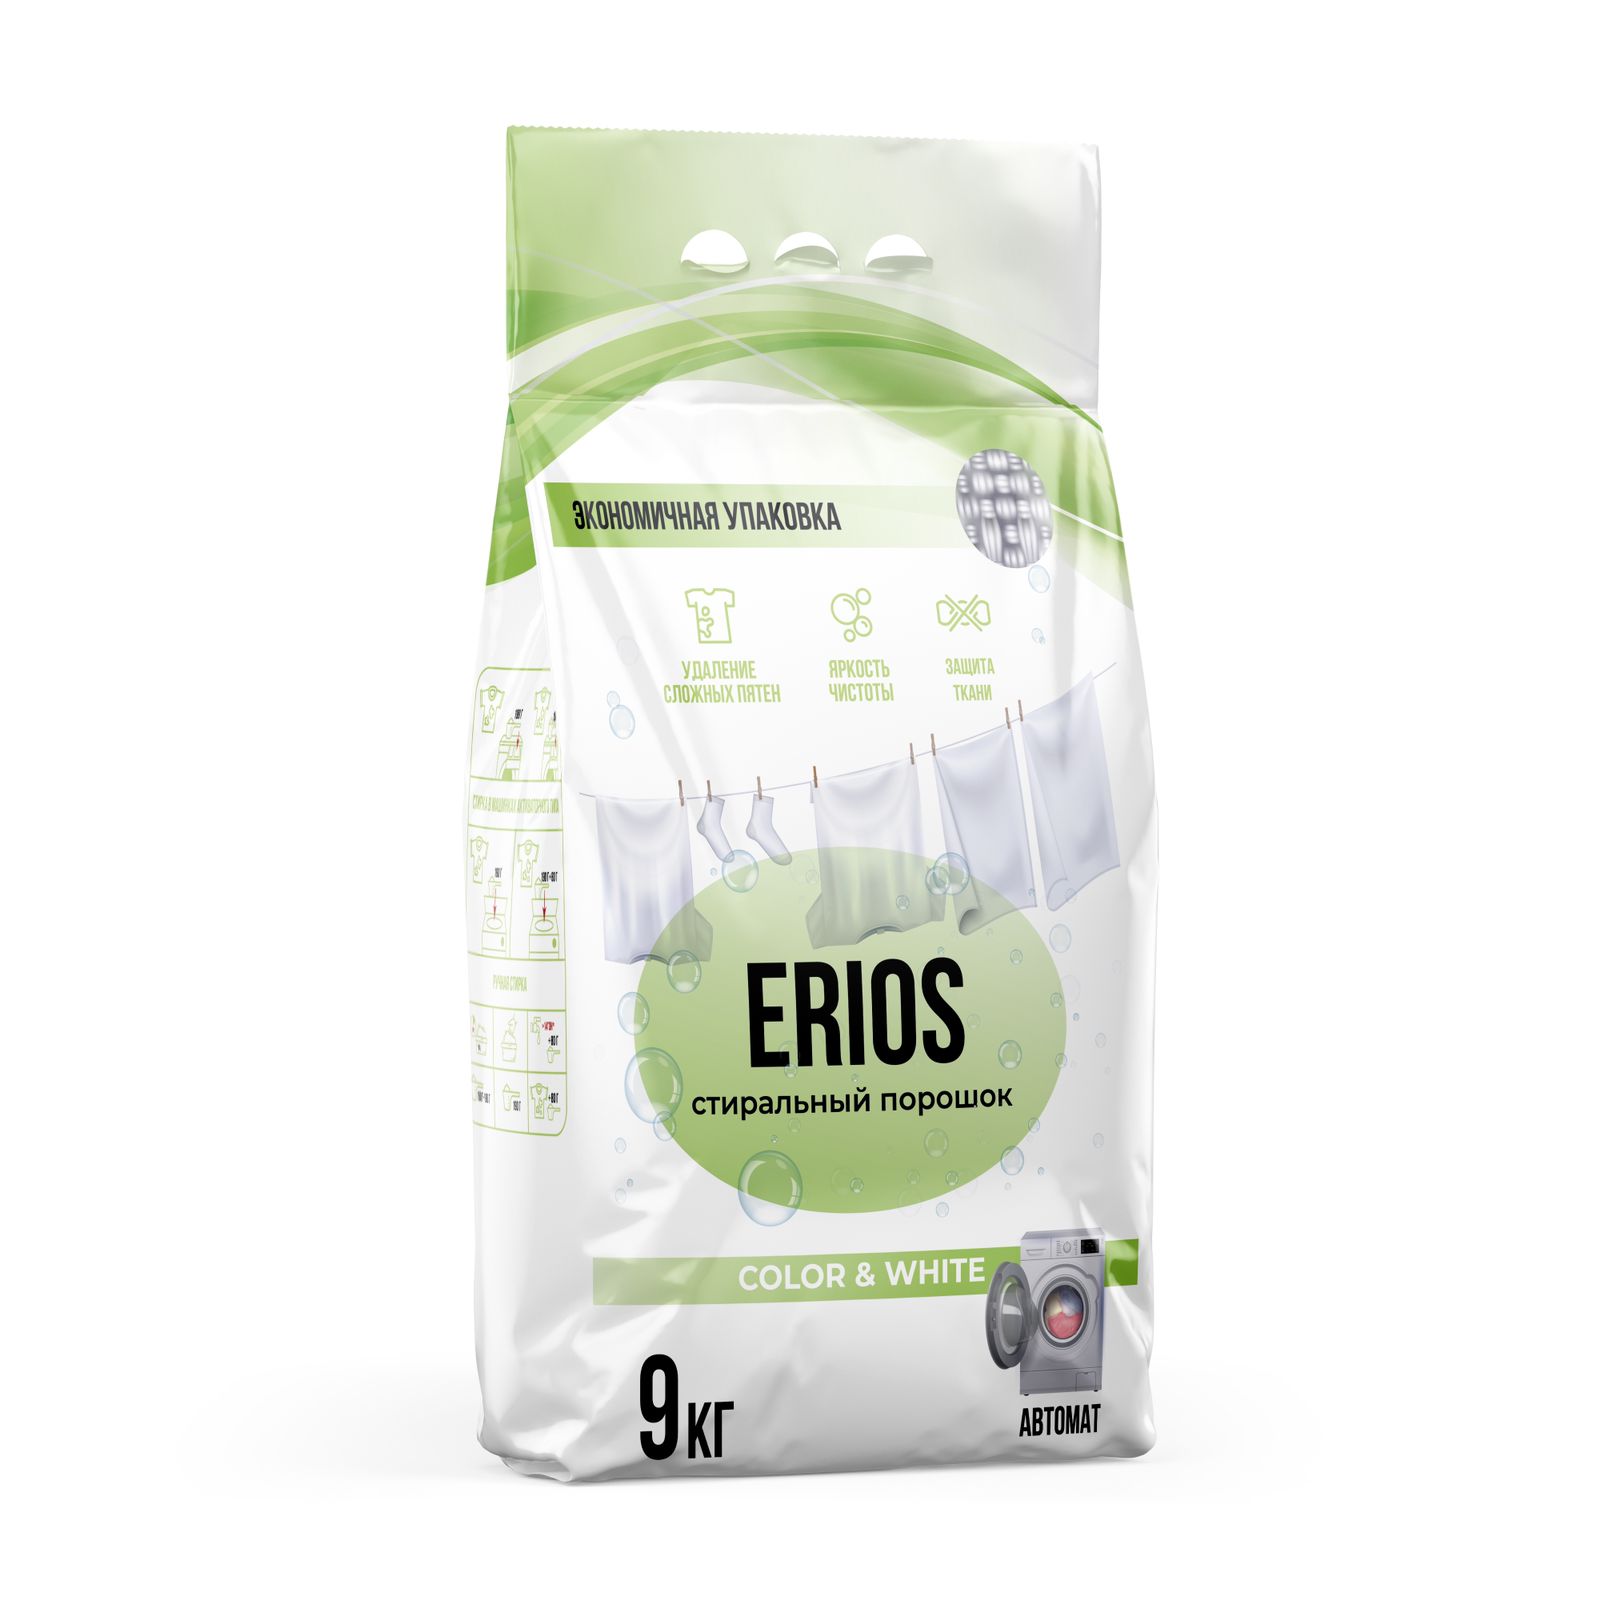 Стиральный порошок ERIOS Универсальный гипоаллергенный для цветного белого белья чувствительной кожи упаковка 9 кг - фото 1